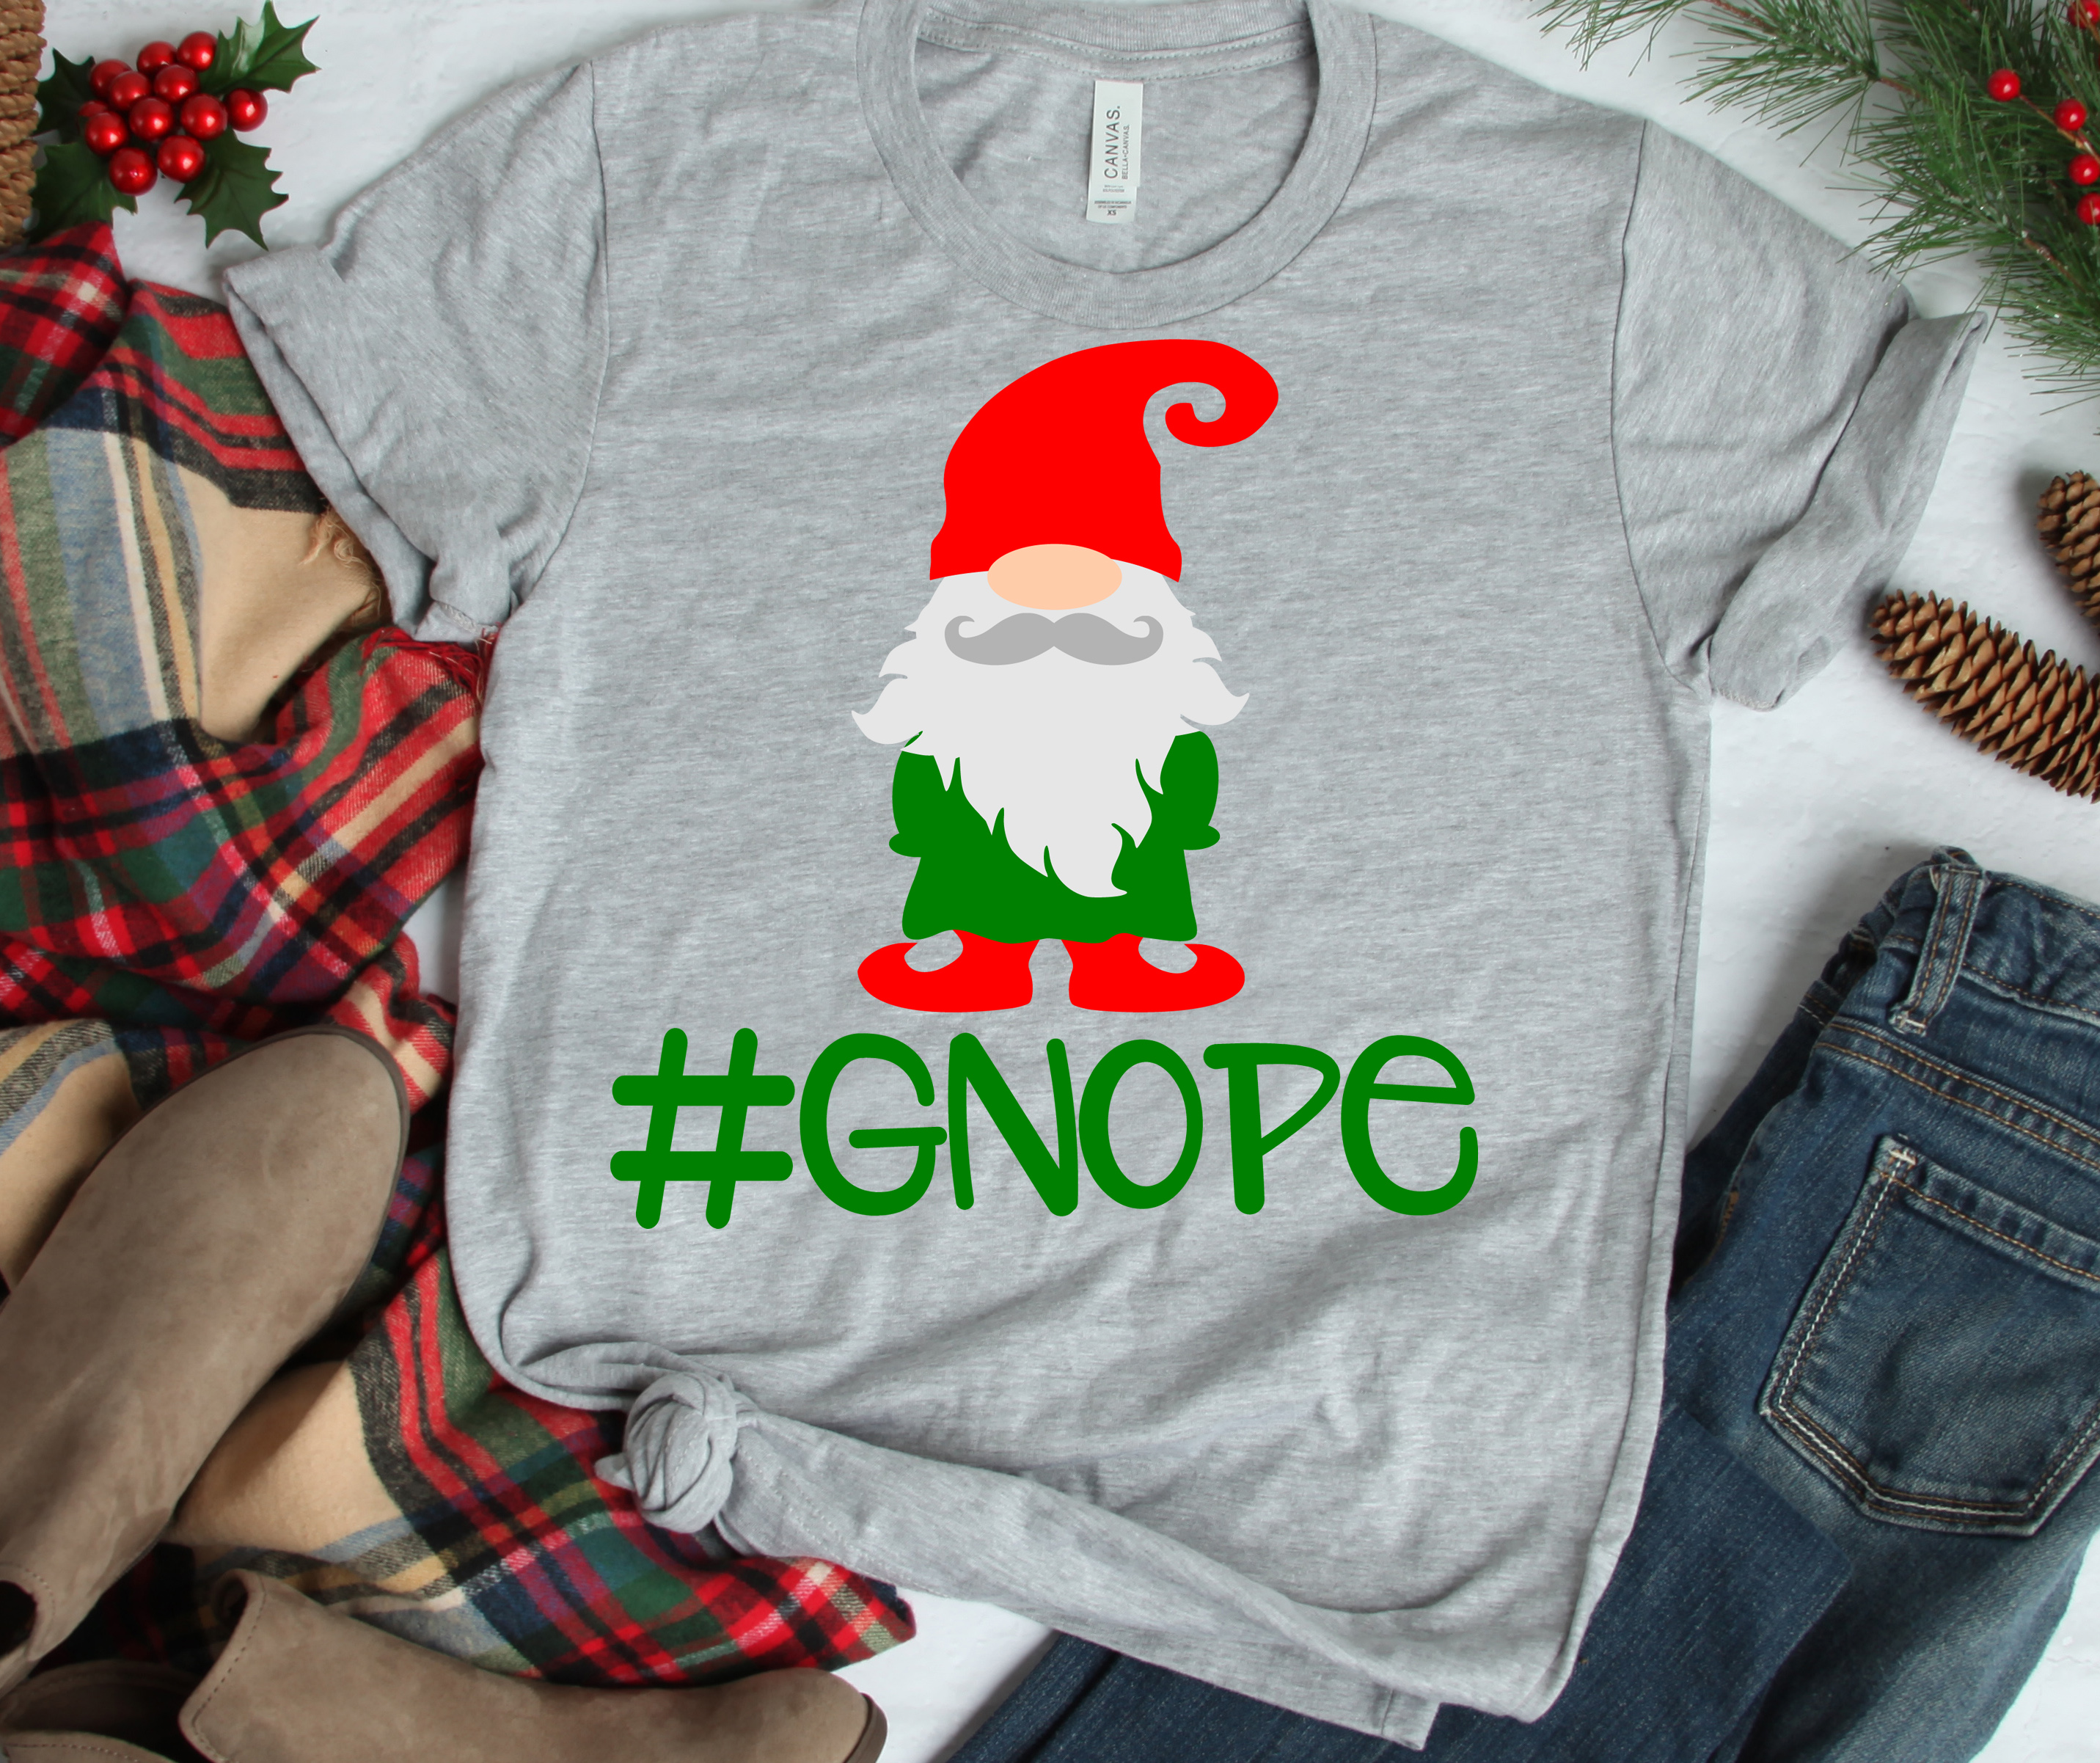 Download Christmas SVG - Gnope Nordic Gnome SVG Elf Dwarf SVG